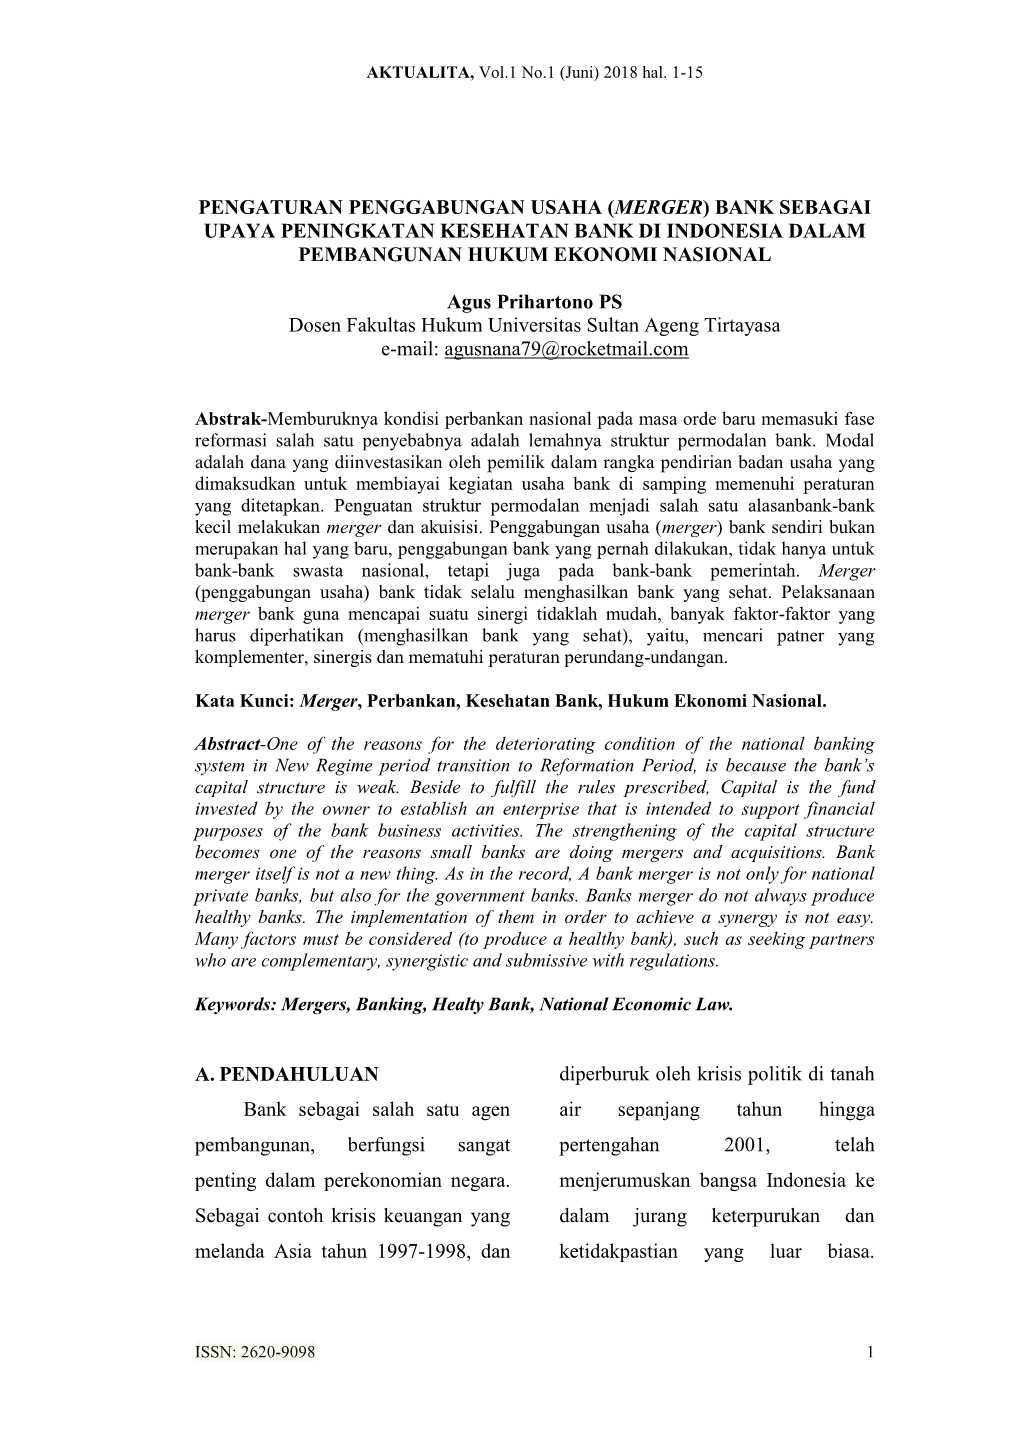 Pengaturan Penggabungan Usaha (Merger) Bank Sebagai Upaya Peningkatan Kesehatan Bank Di Indonesia Dalam Pembangunan Hukum Ekonomi Nasional